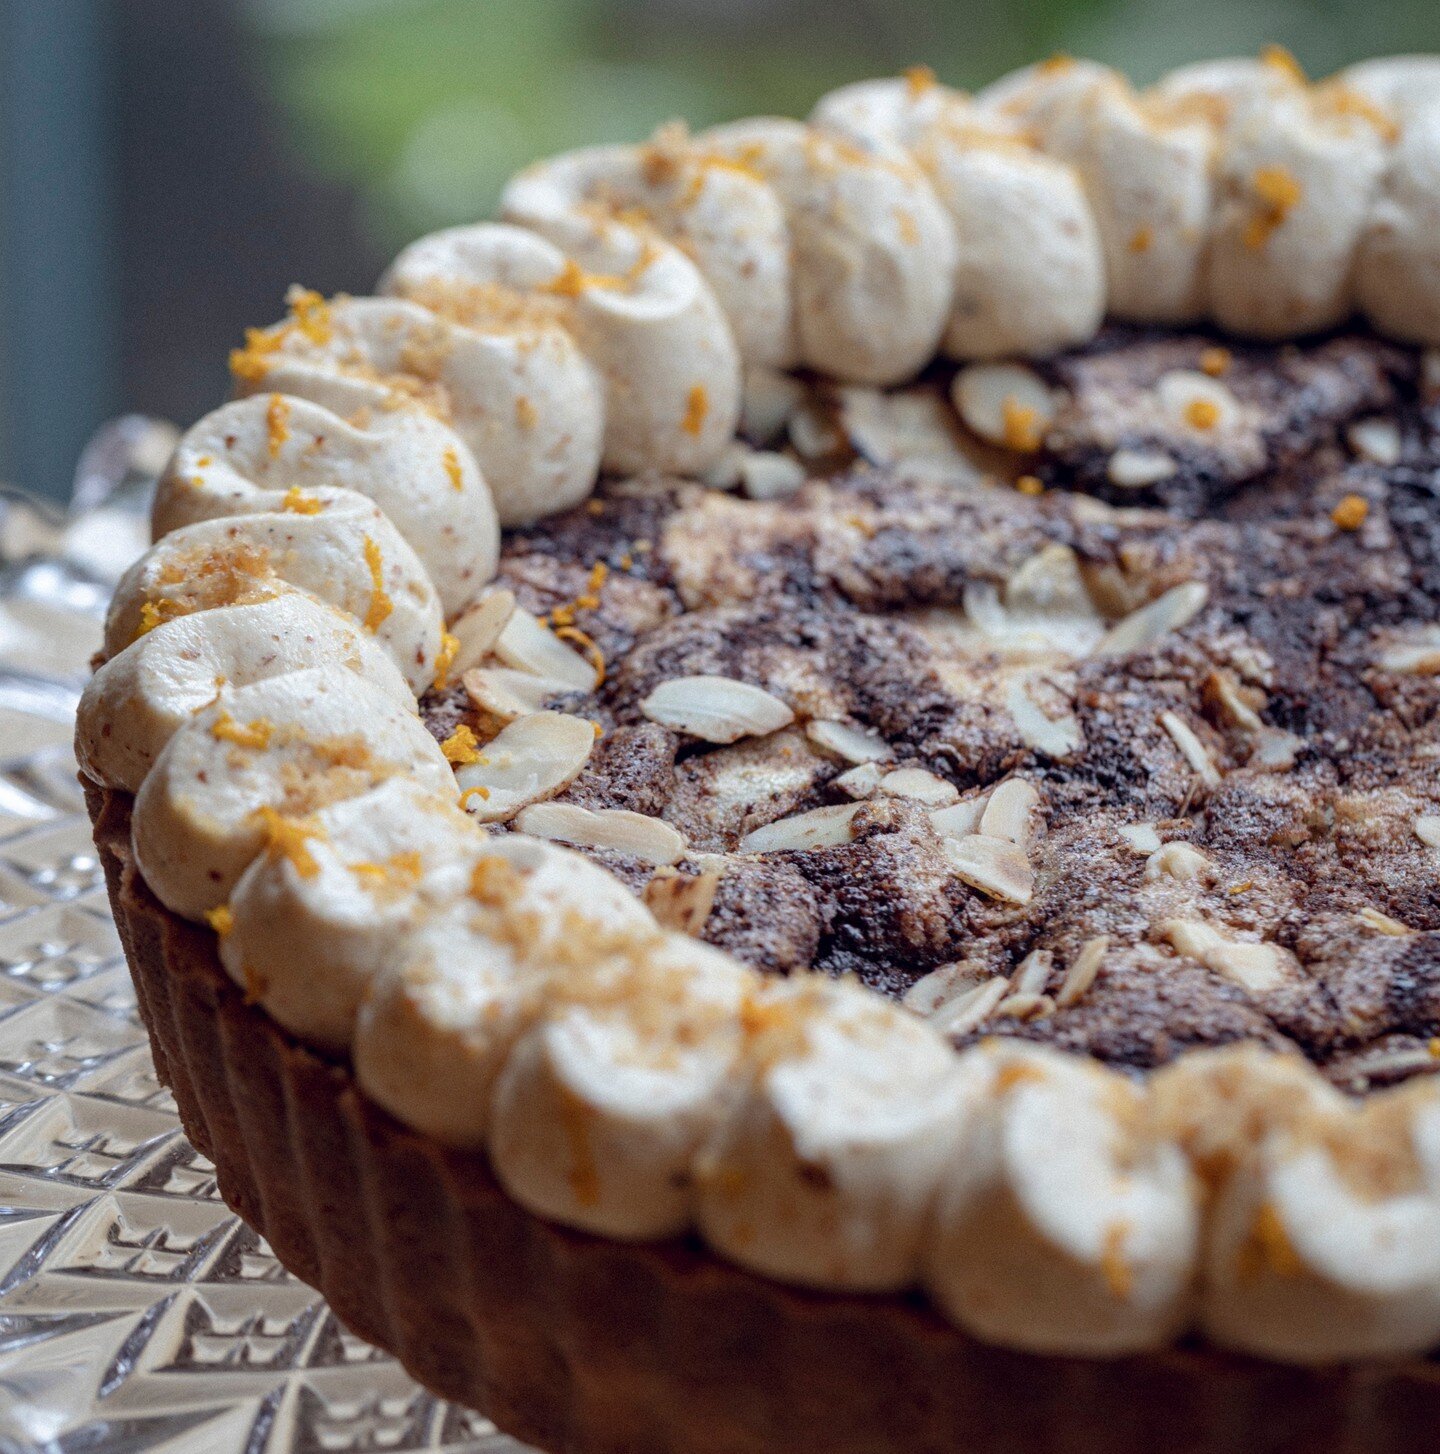 Chocolate &amp; pear frangipane tart

#dessert #chocolate #chocolatetart #frangipanetart